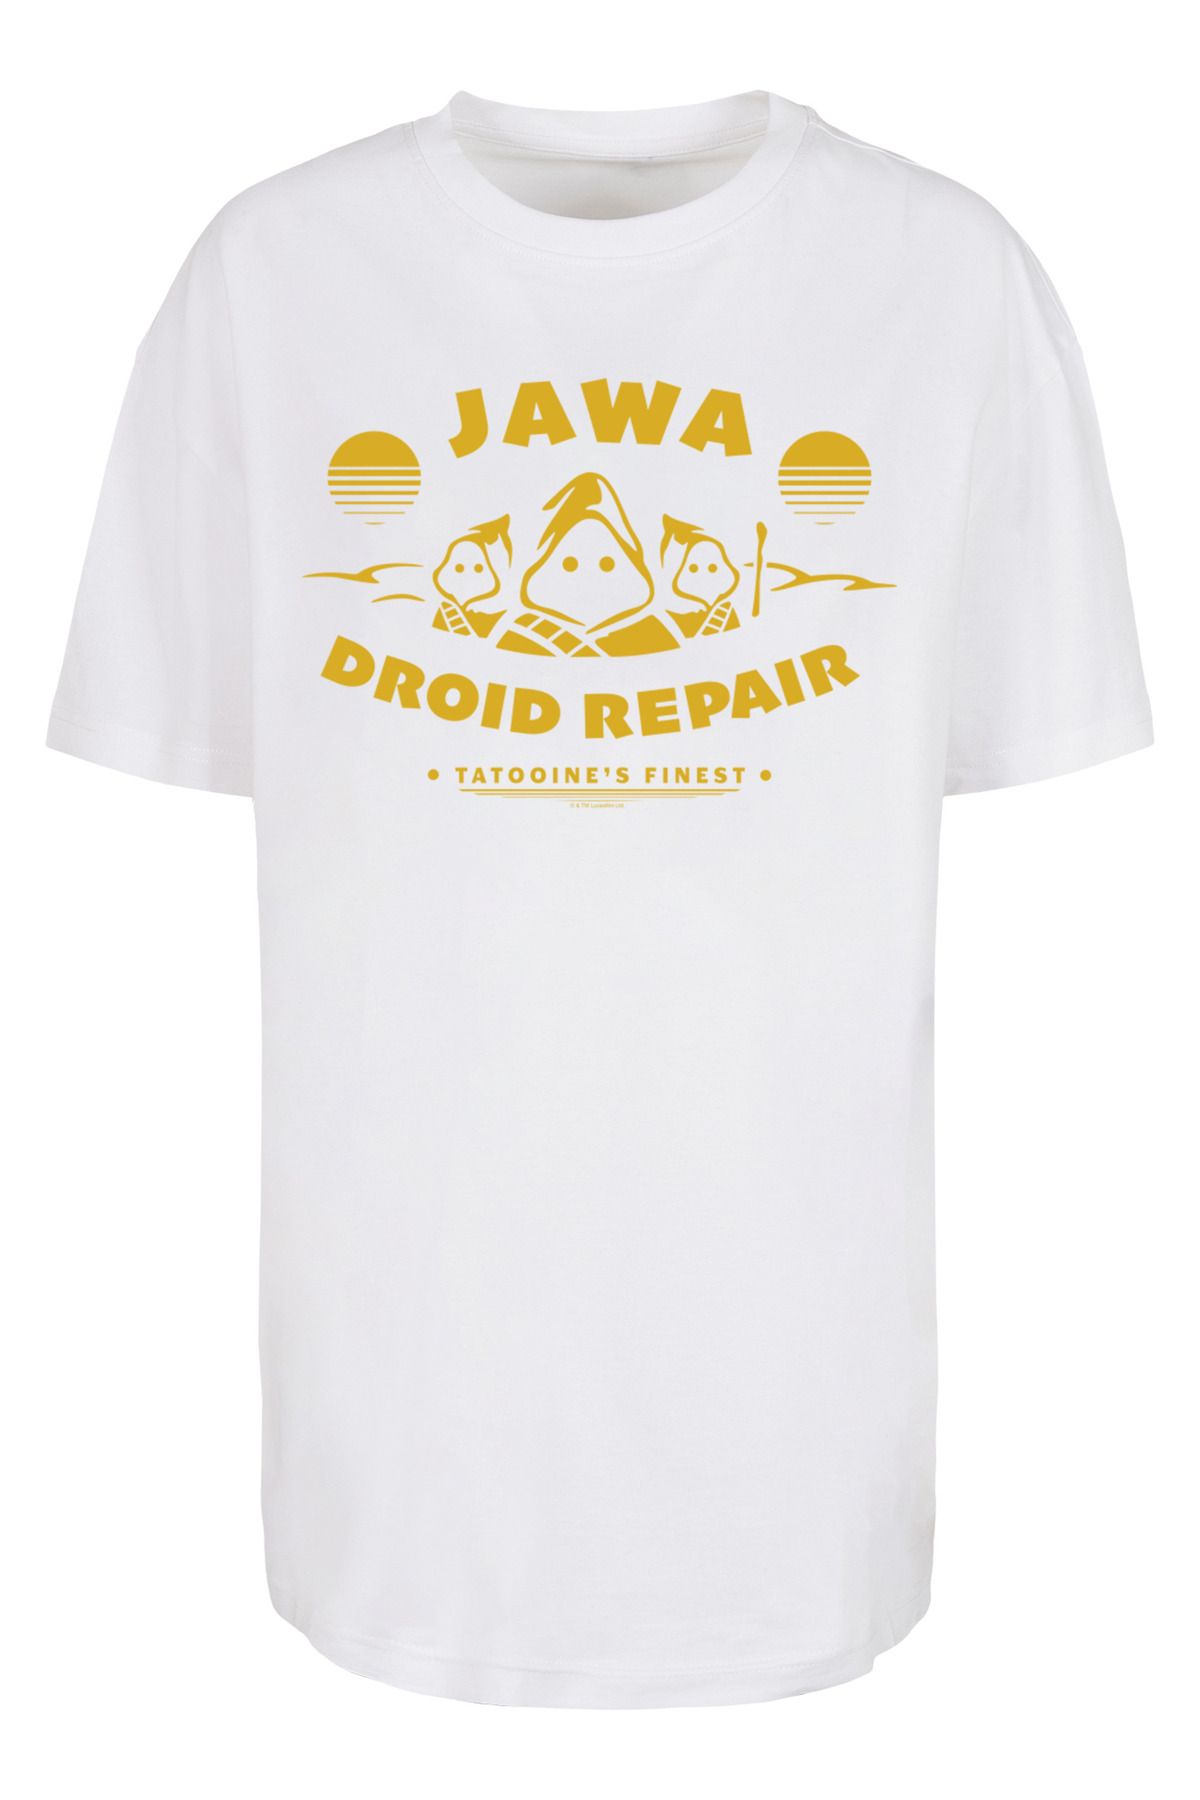 Droid Damen übergroßem - Trendyol Damen Jawa mit Wars F4NT4STIC Boyfriend-T-Shirt Star für Repair